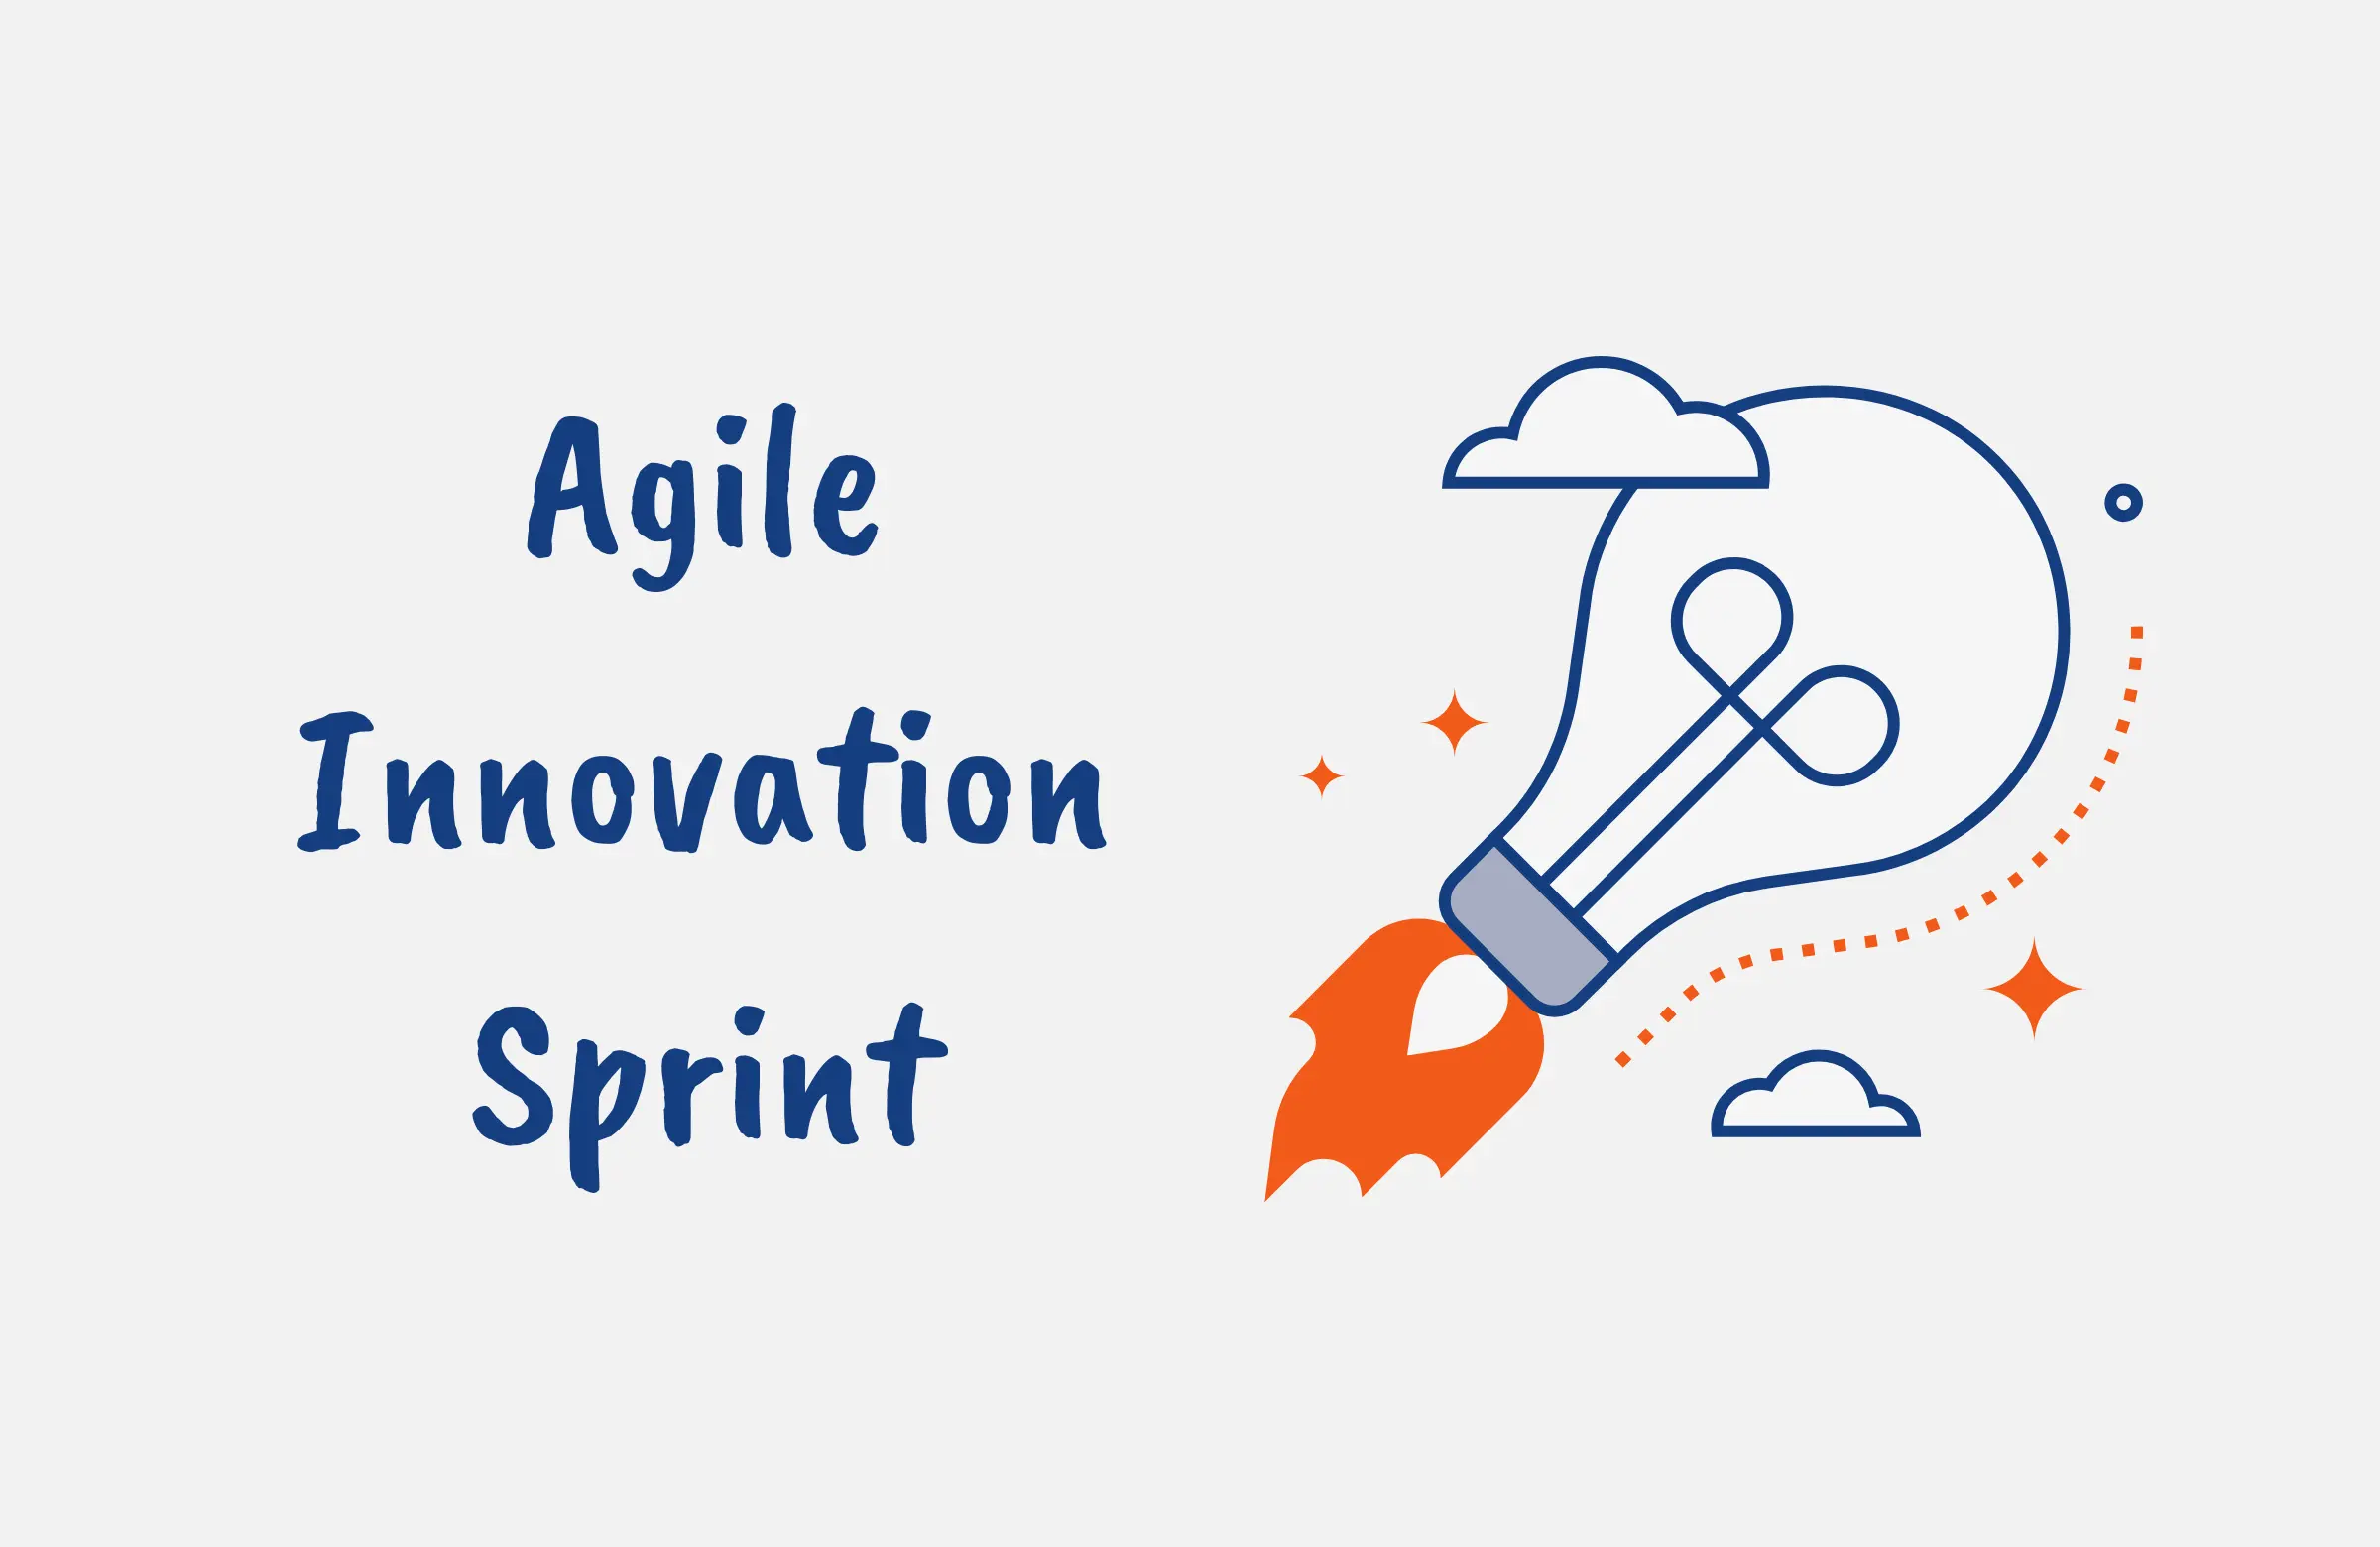 innovation sprint in Agile